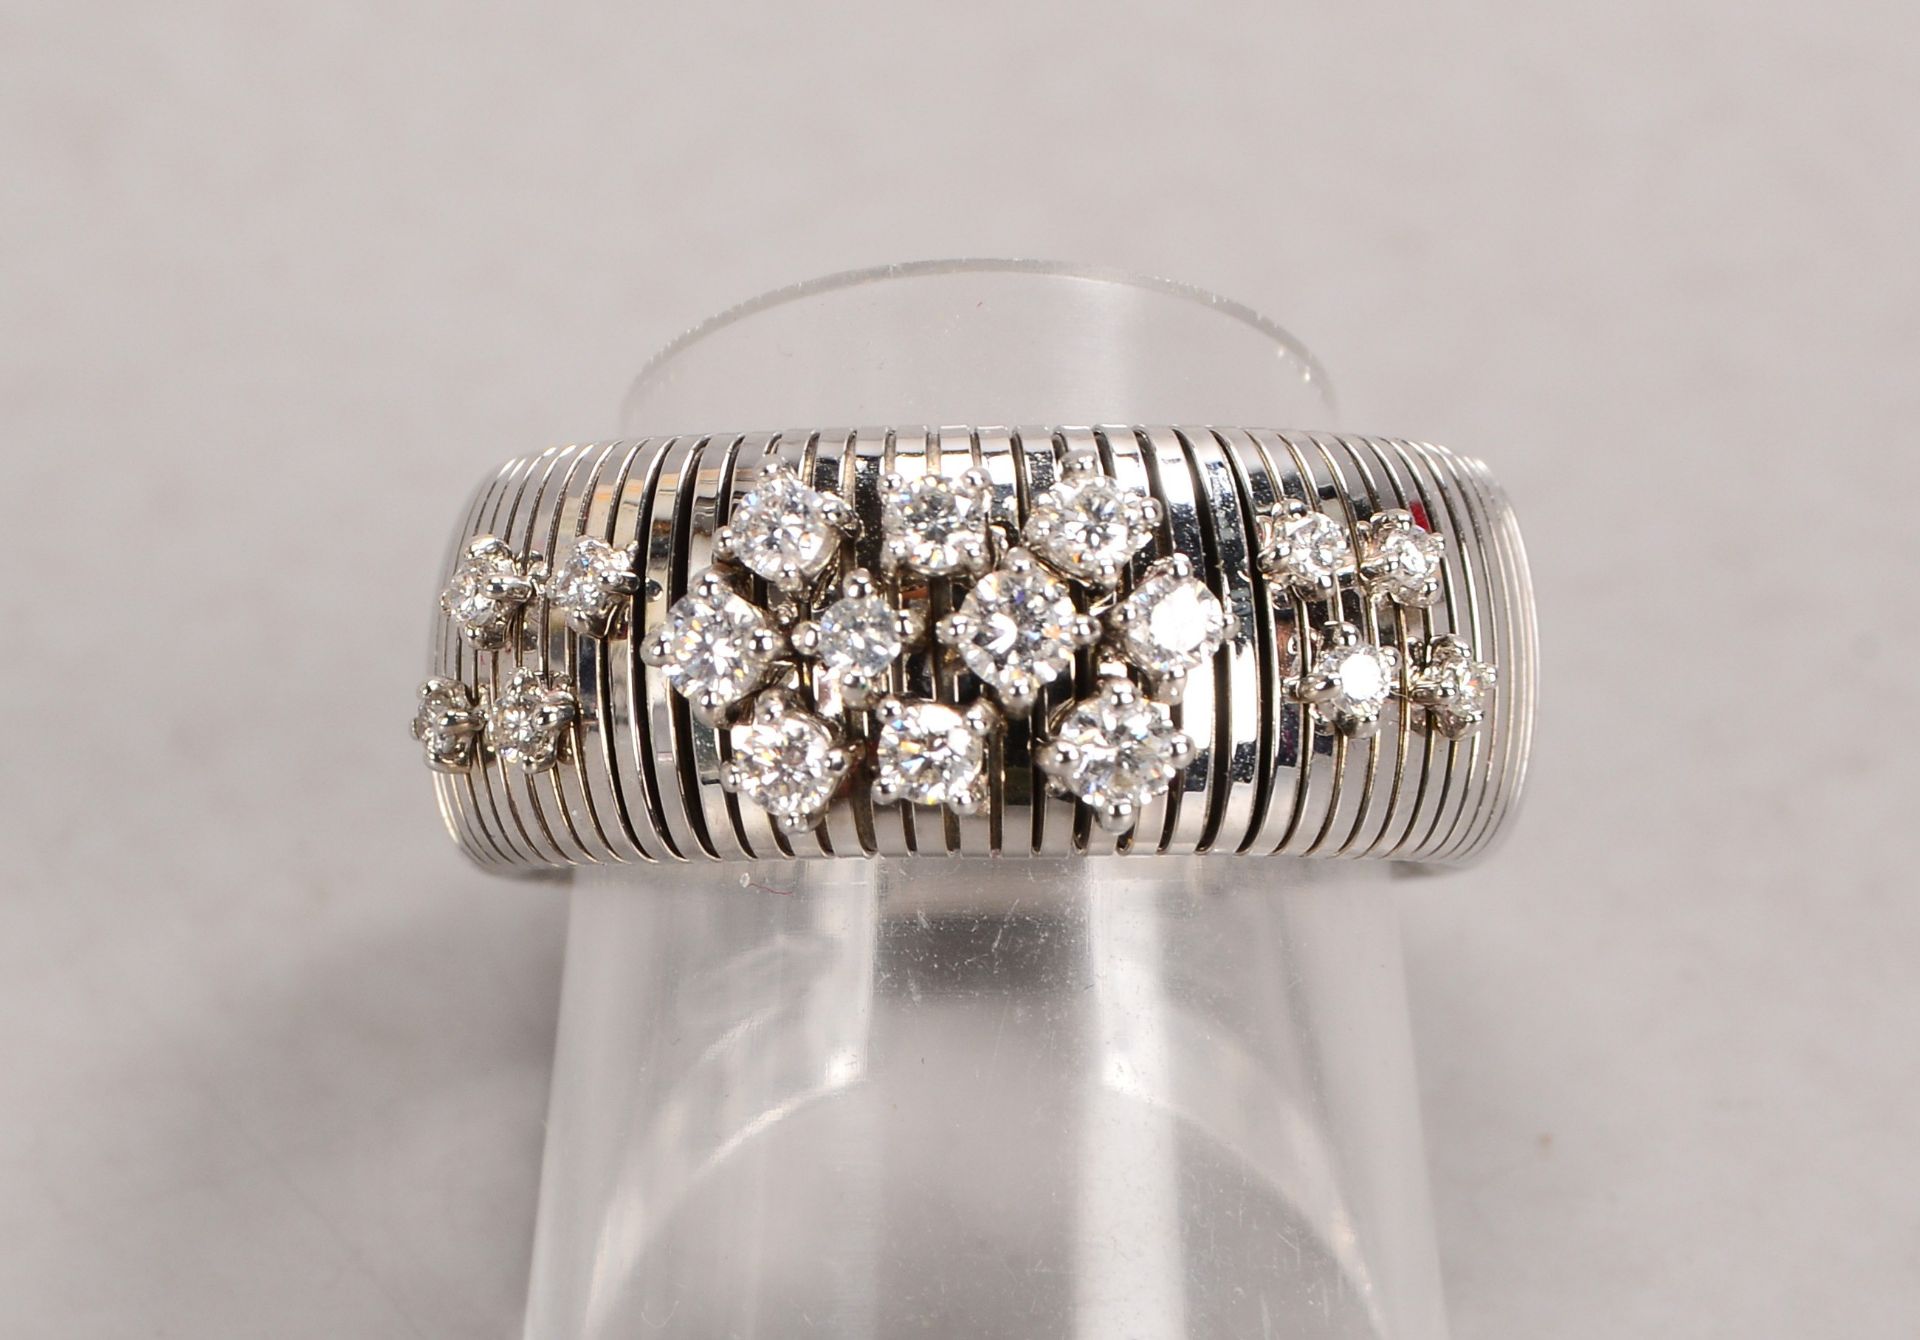 Chimento/Italien, Ring, 750 WG (gestempelt), breite Ringschiene mit 18-fachem Brillantbesatz/zusamme - Image 2 of 2